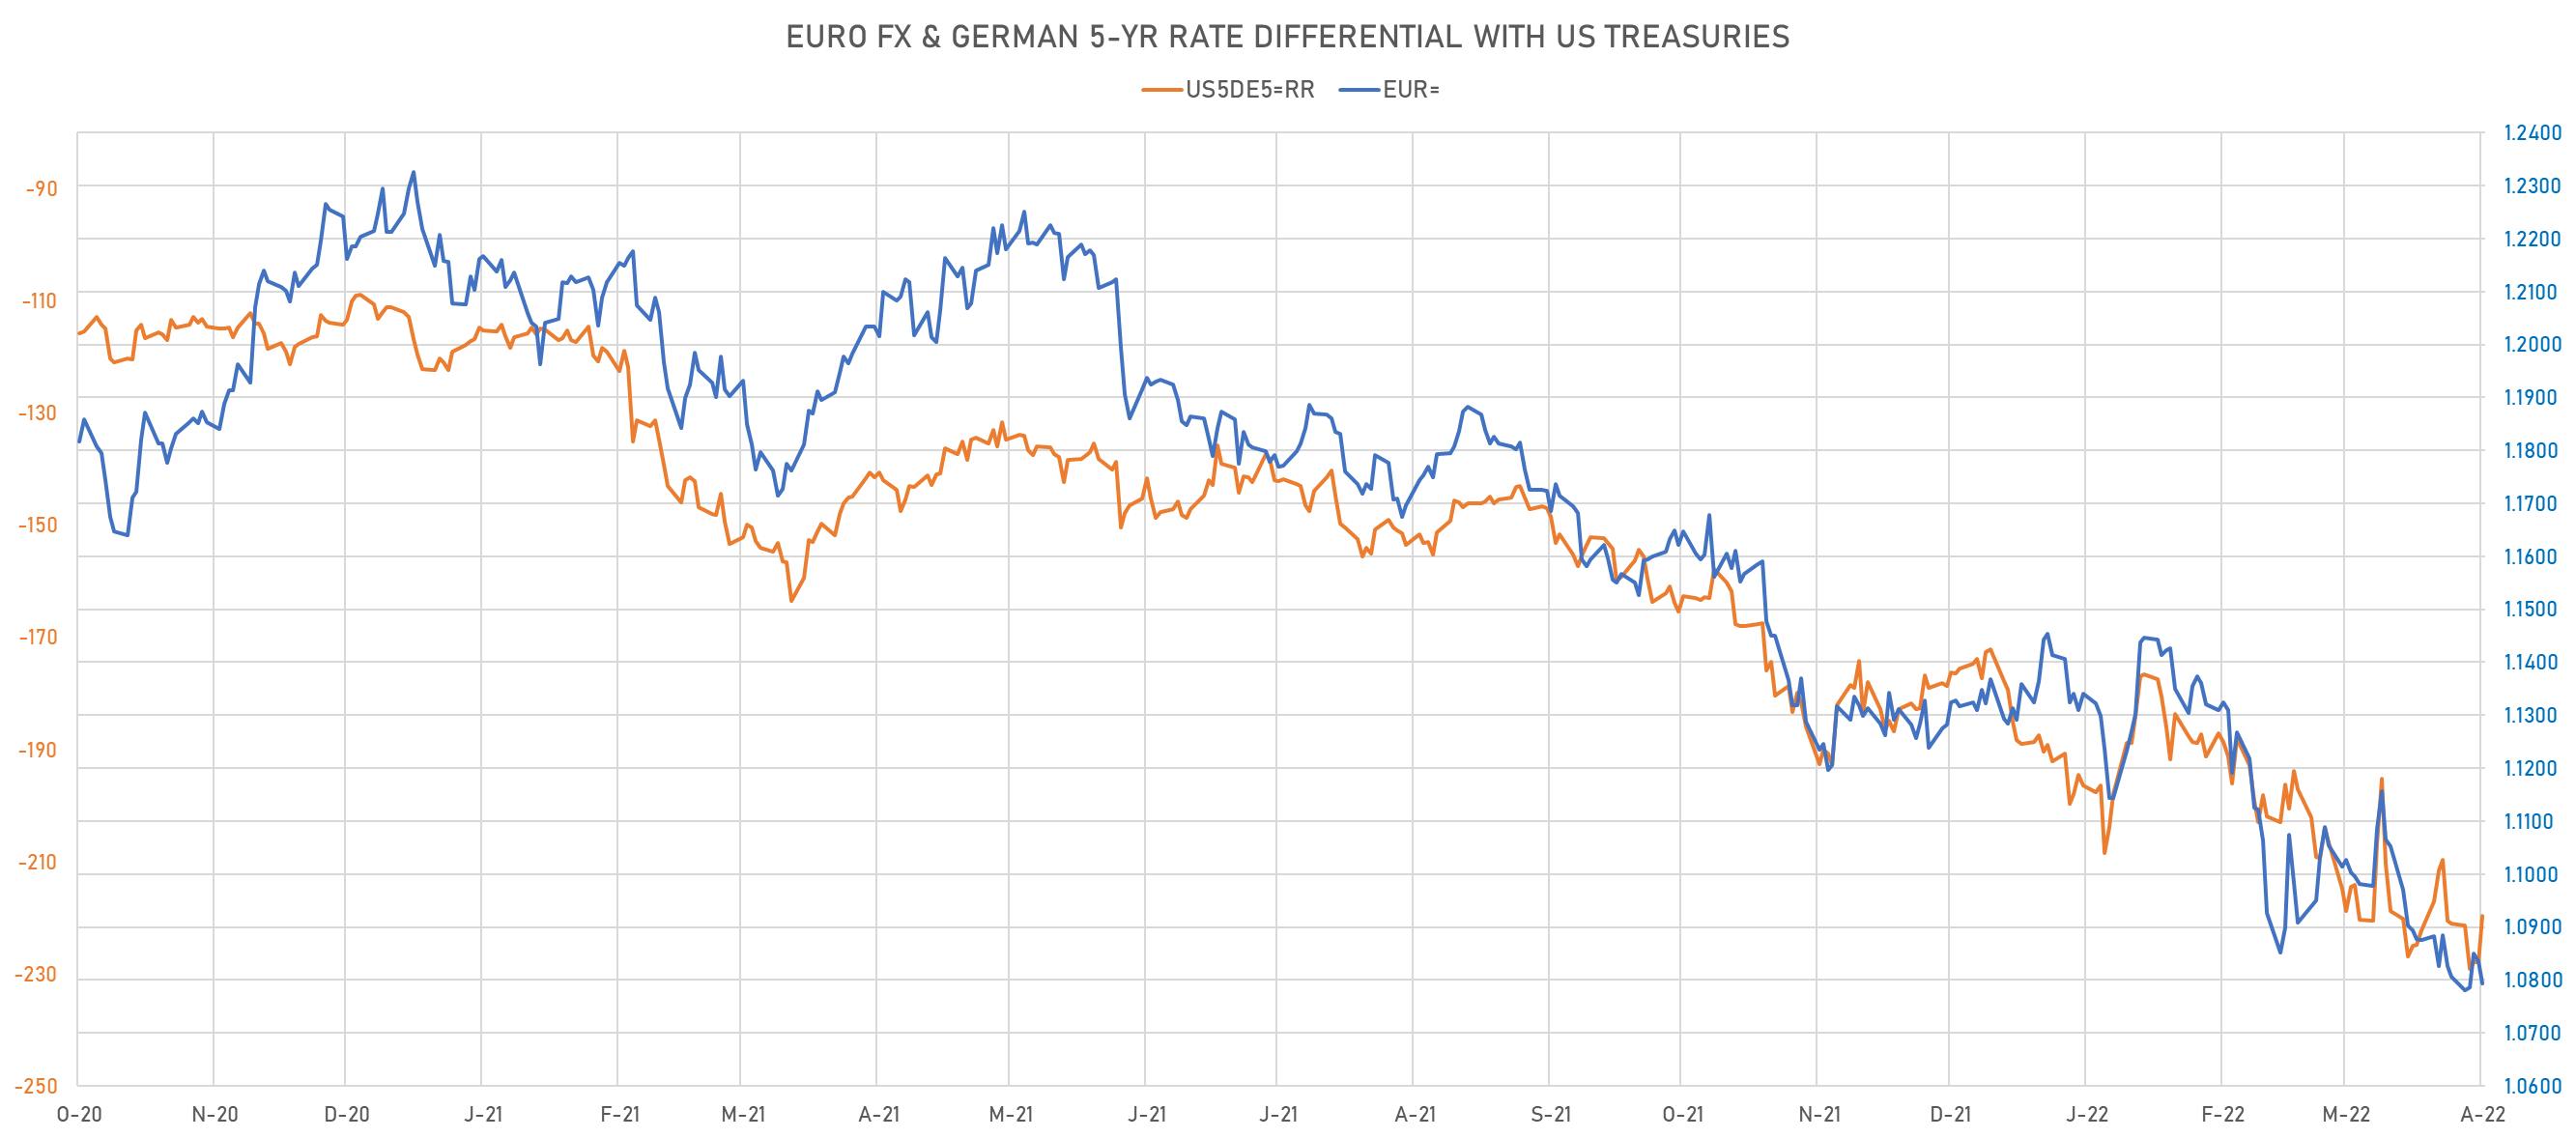 US DE 5Y Rates Differential vs Euro Spot Rate | Sources: phipost.com, Refinitiv data 